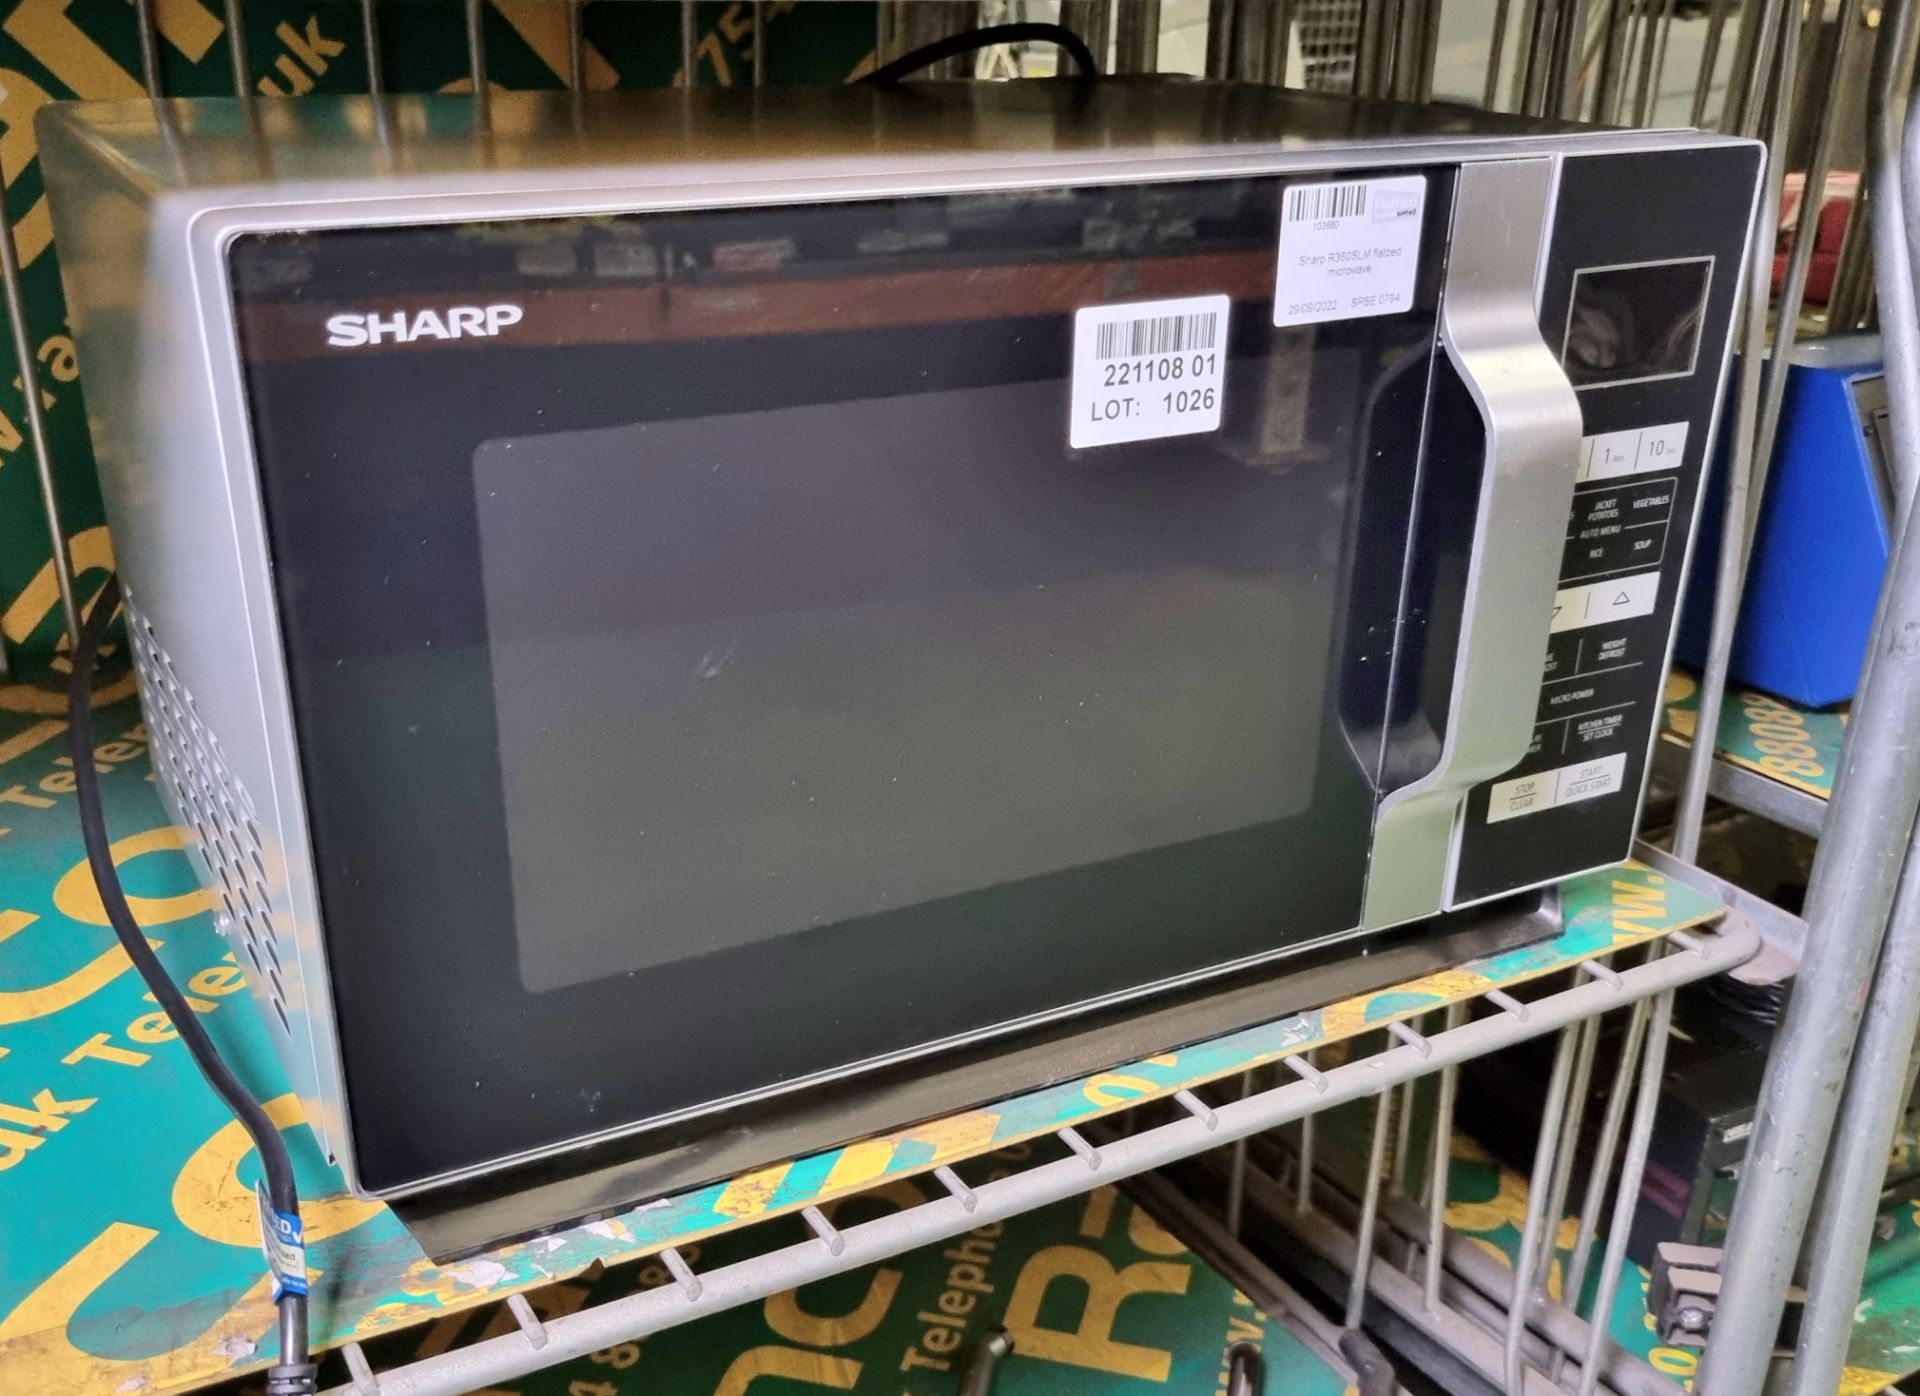 Sharp R360SLM flatbed microwave - Image 2 of 3